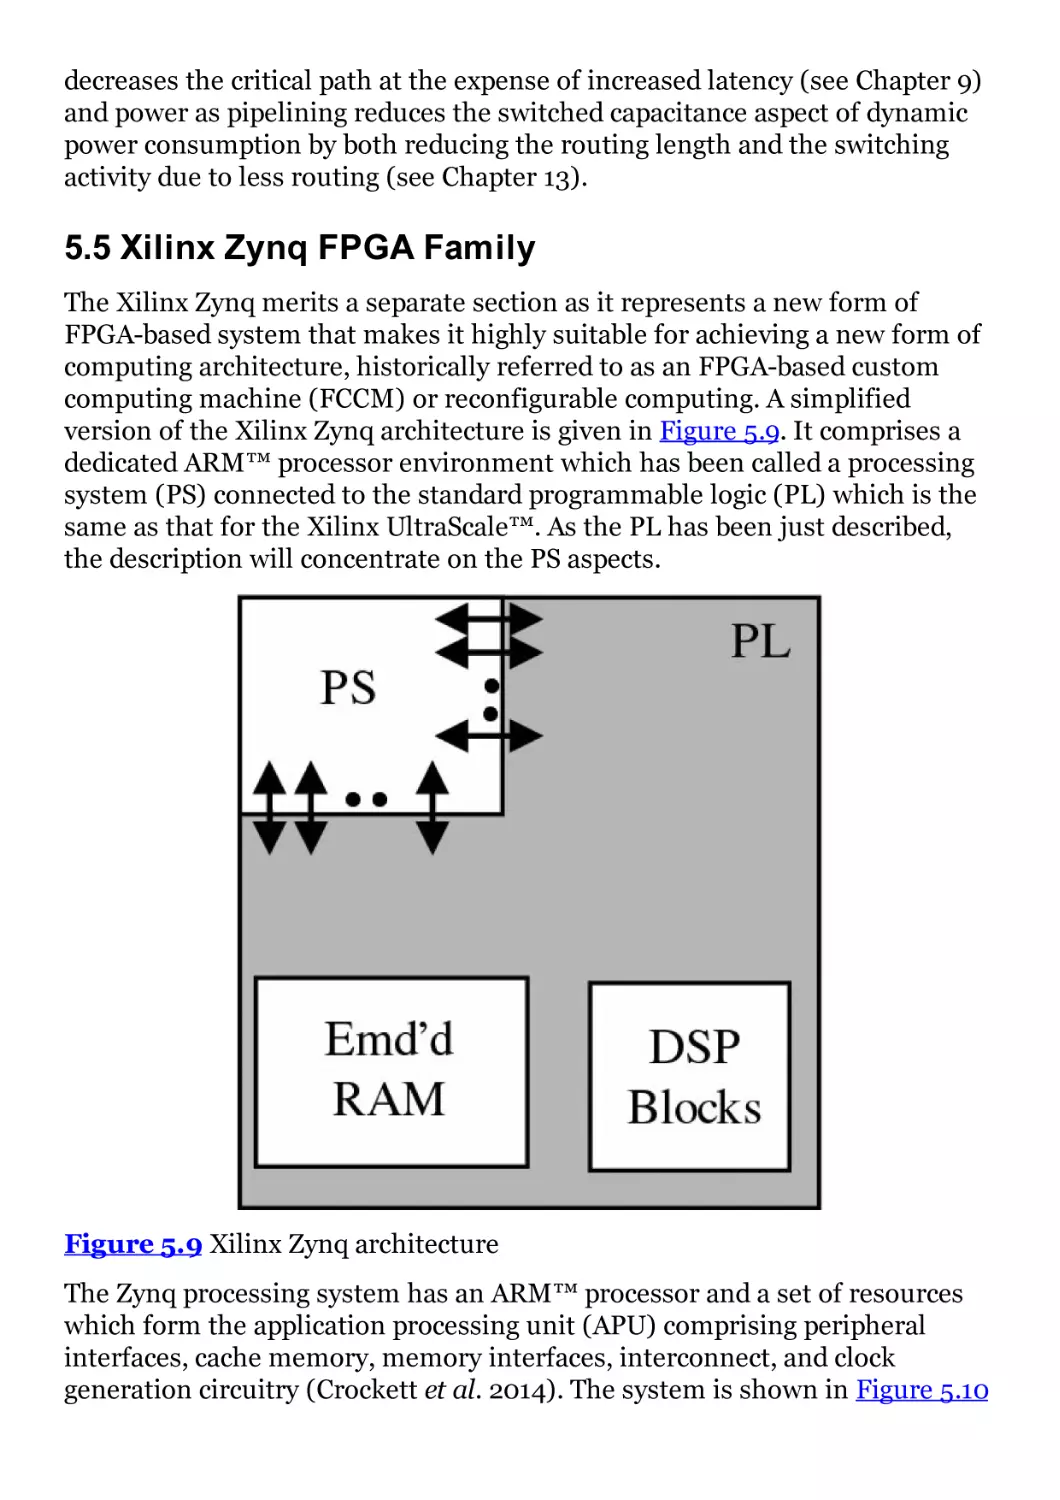 5.5 Xilinx Zynq FPGA Family